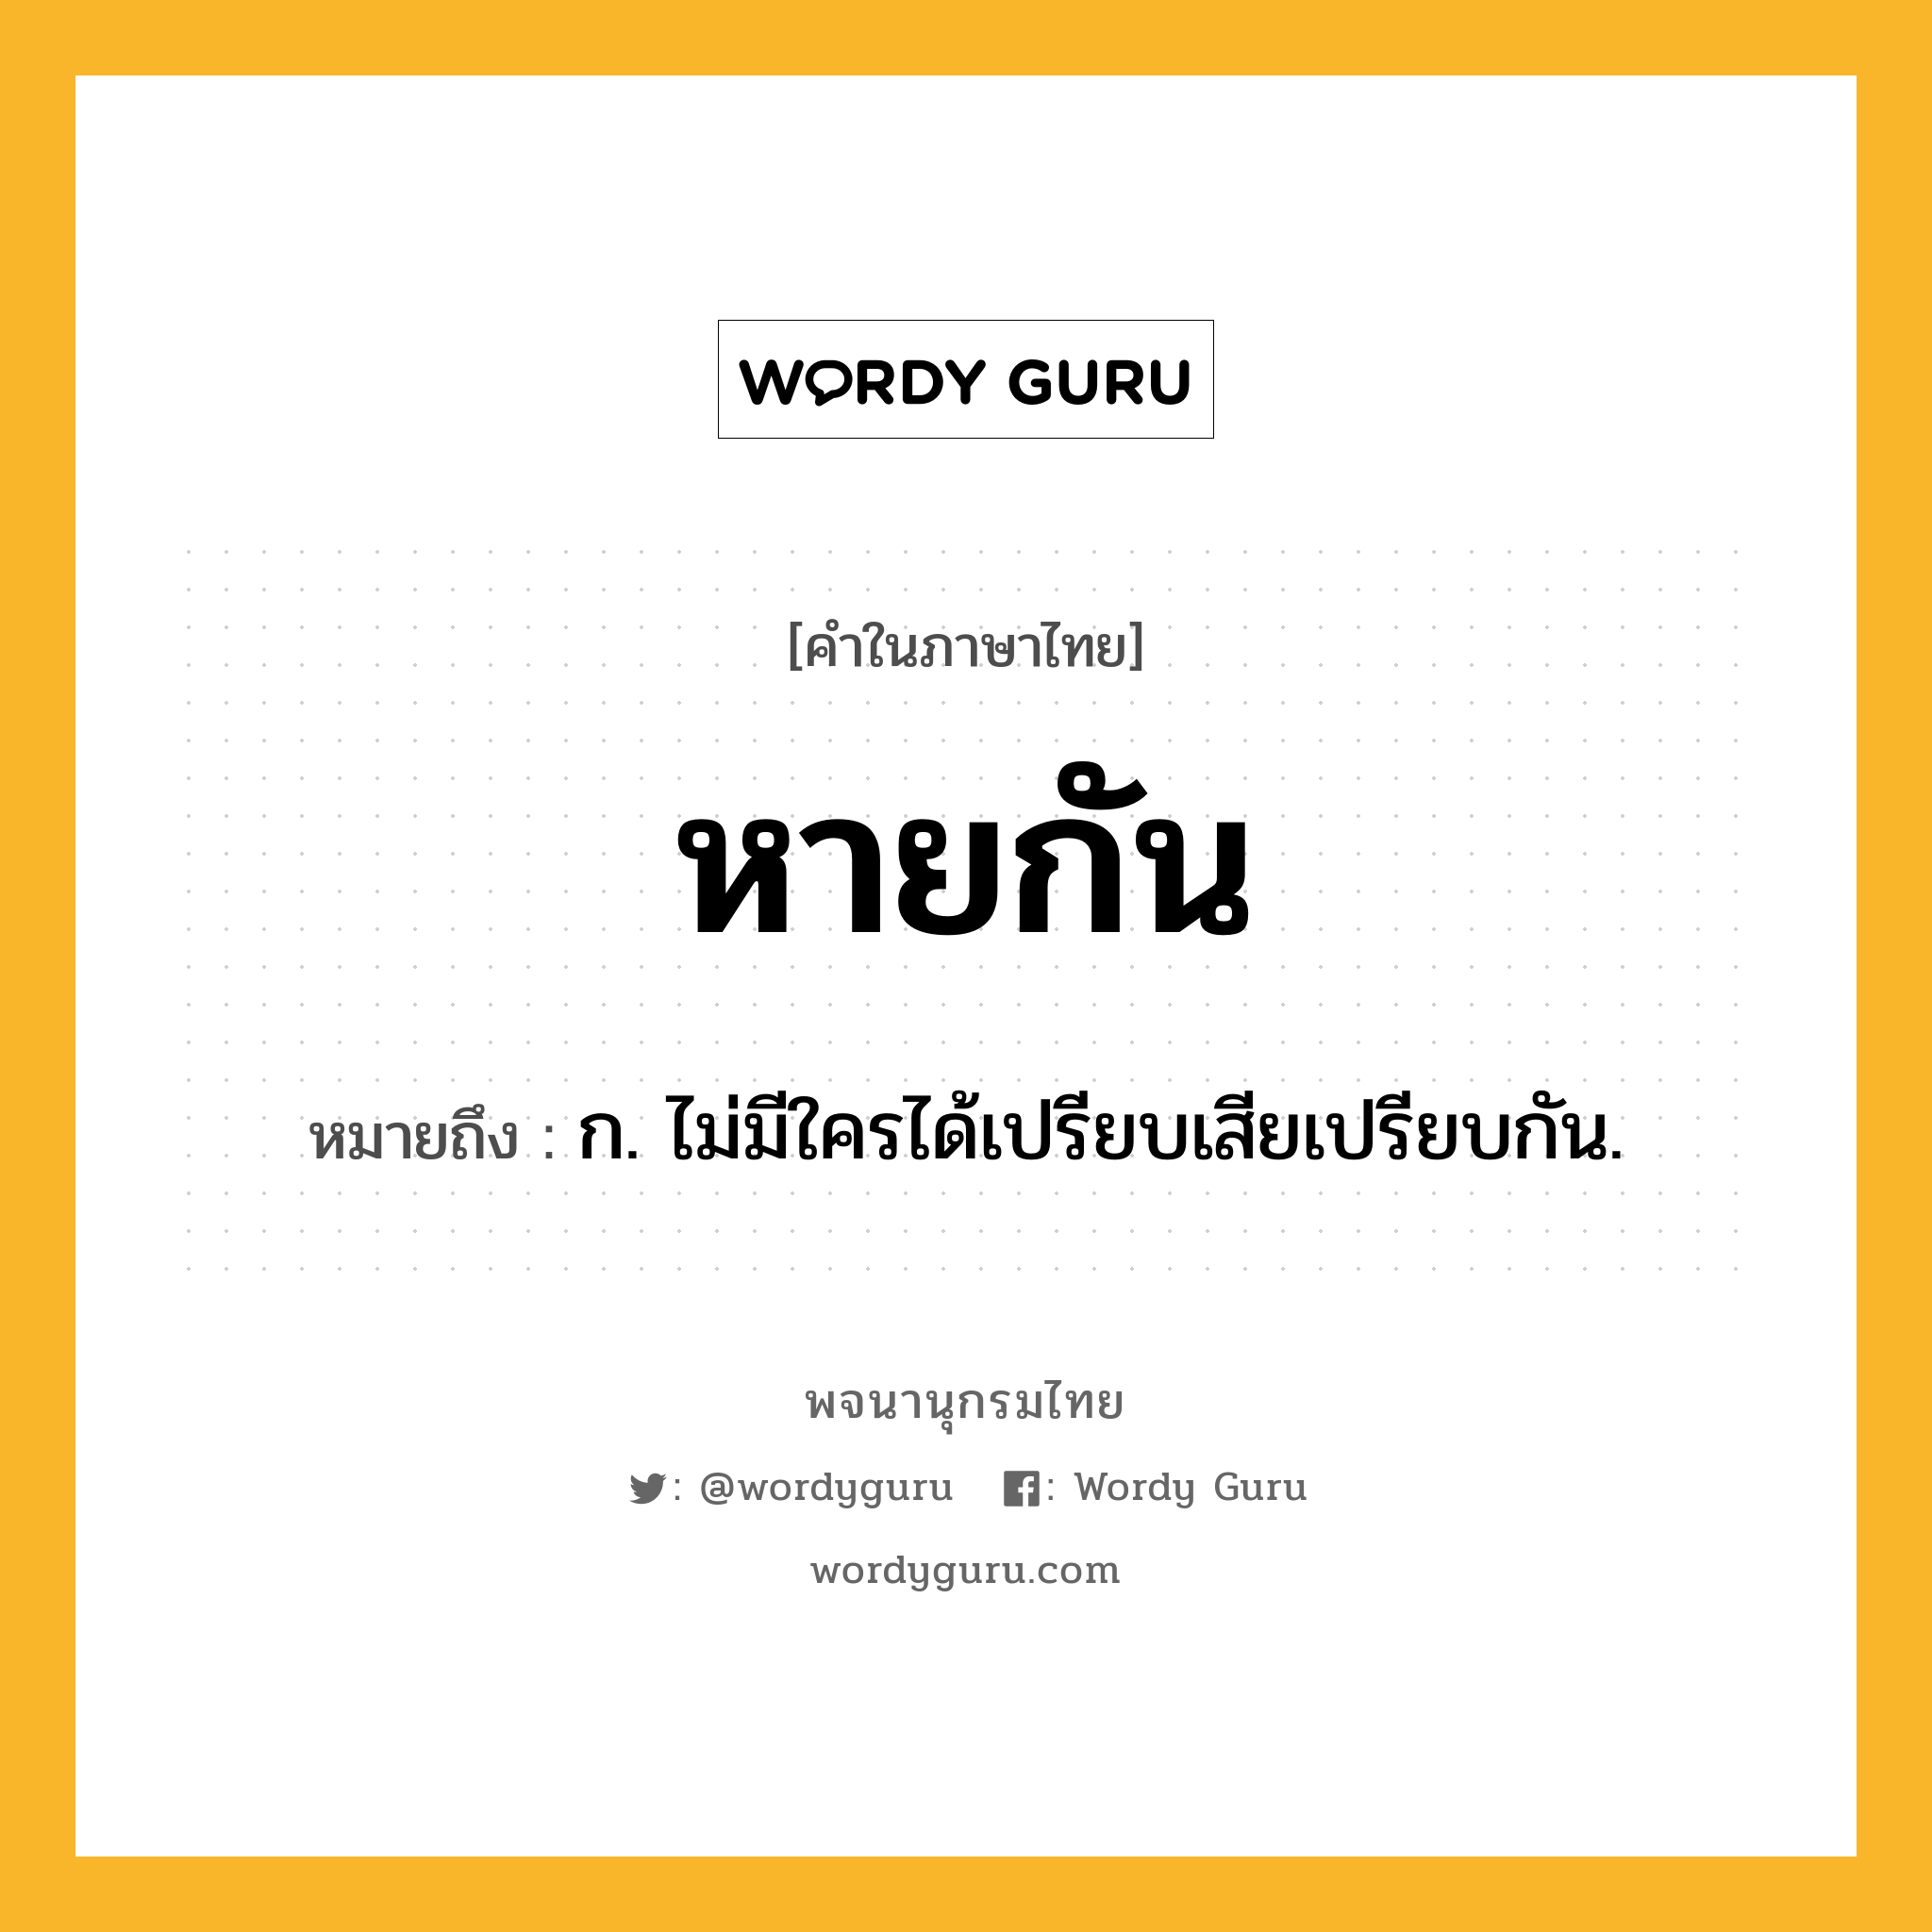 หายกัน หมายถึงอะไร?, คำในภาษาไทย หายกัน หมายถึง ก. ไม่มีใครได้เปรียบเสียเปรียบกัน.